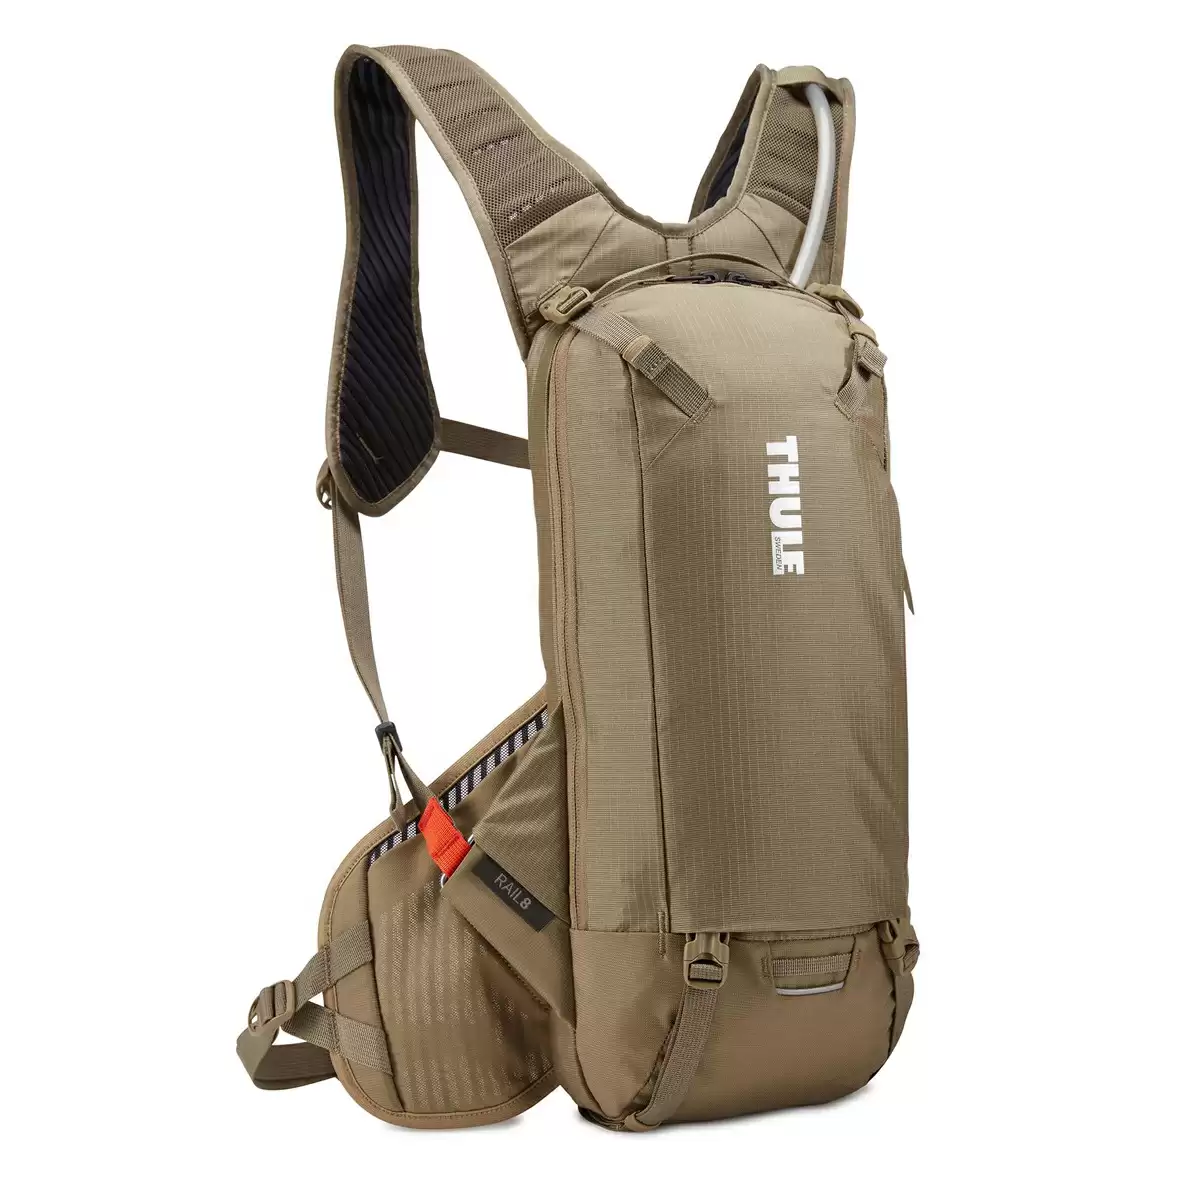 Water backpack Rail 8lt brown - image